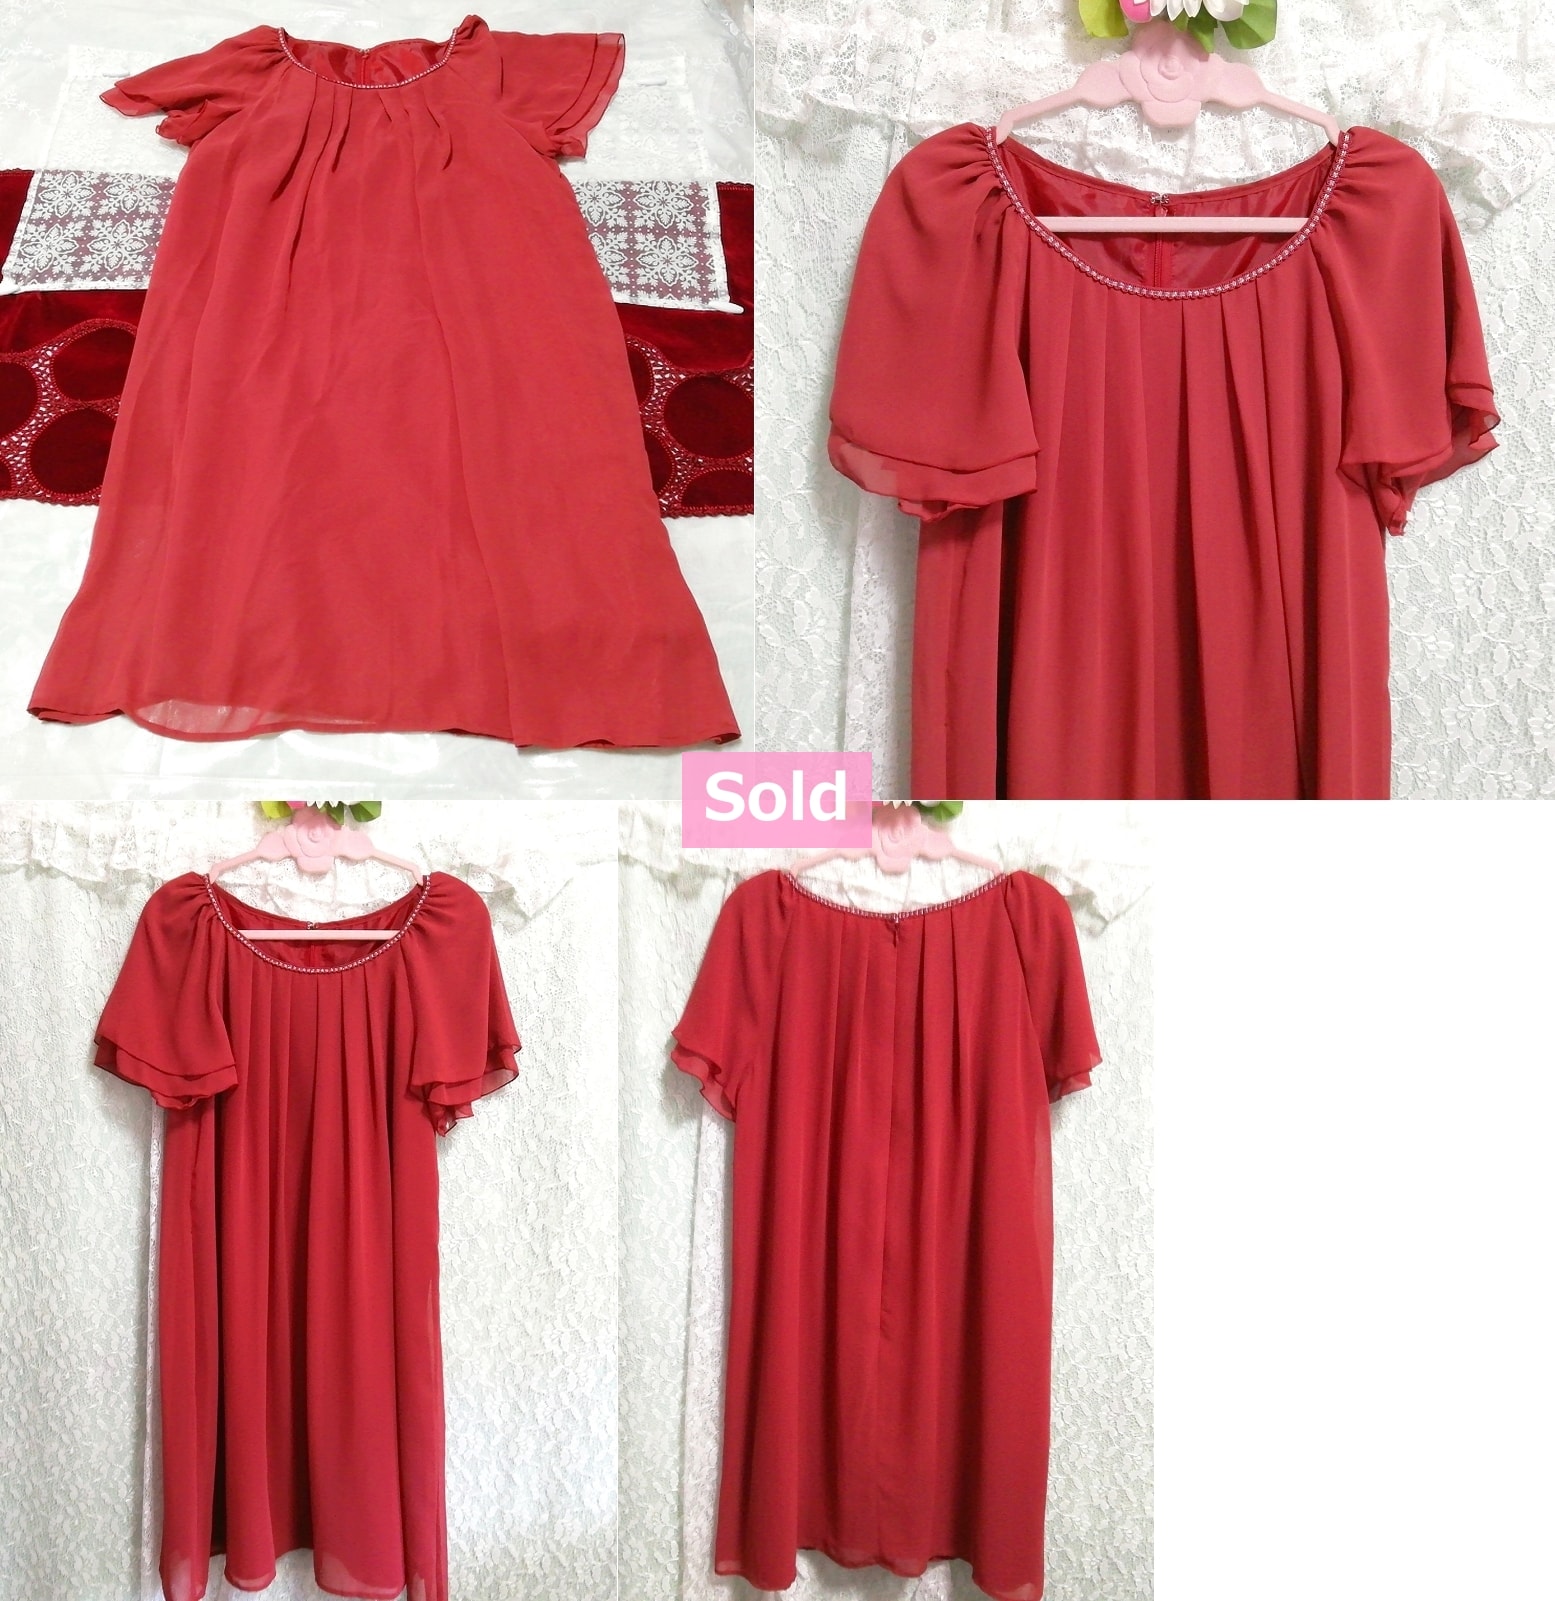 Красная шифоновая длинная туника с короткими рукавами, пеньюар, ночная рубашка, ночное платье, туника, короткий рукав, л размер